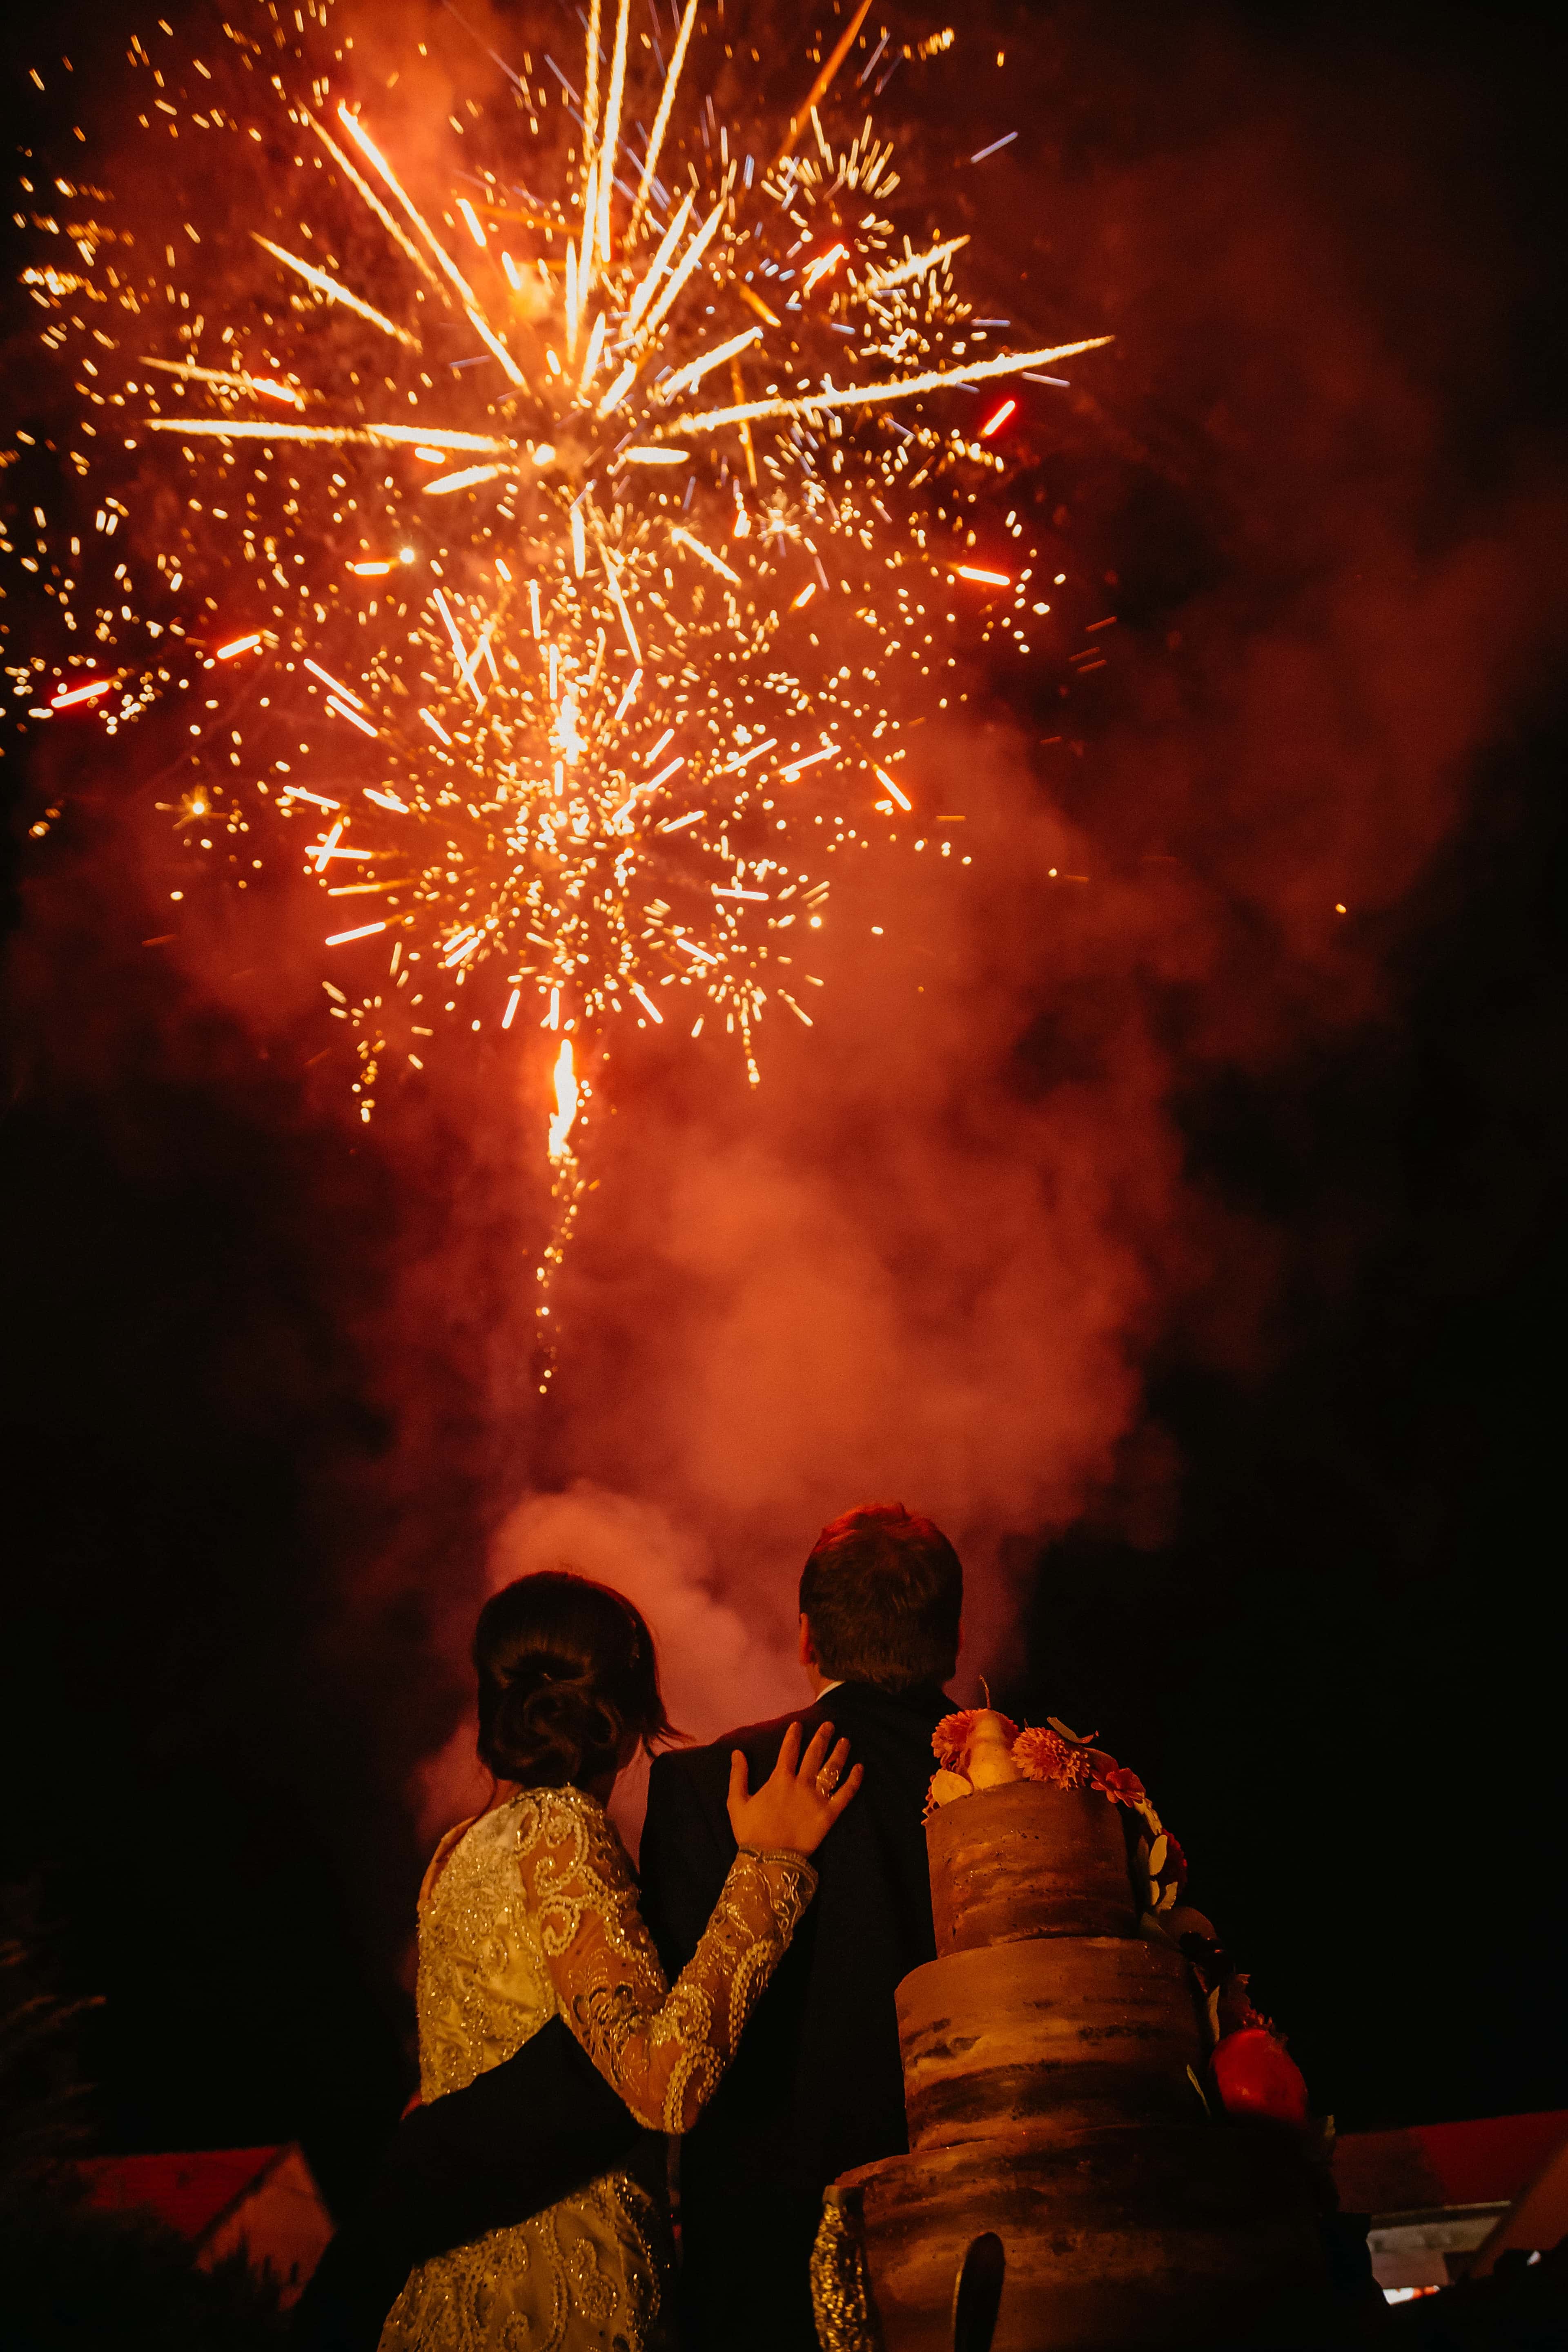 Image libre: romantique, feux d'artifice, petit ami, petite amie,  étreindre, Festival, célébration, fumée, bougie, explosion